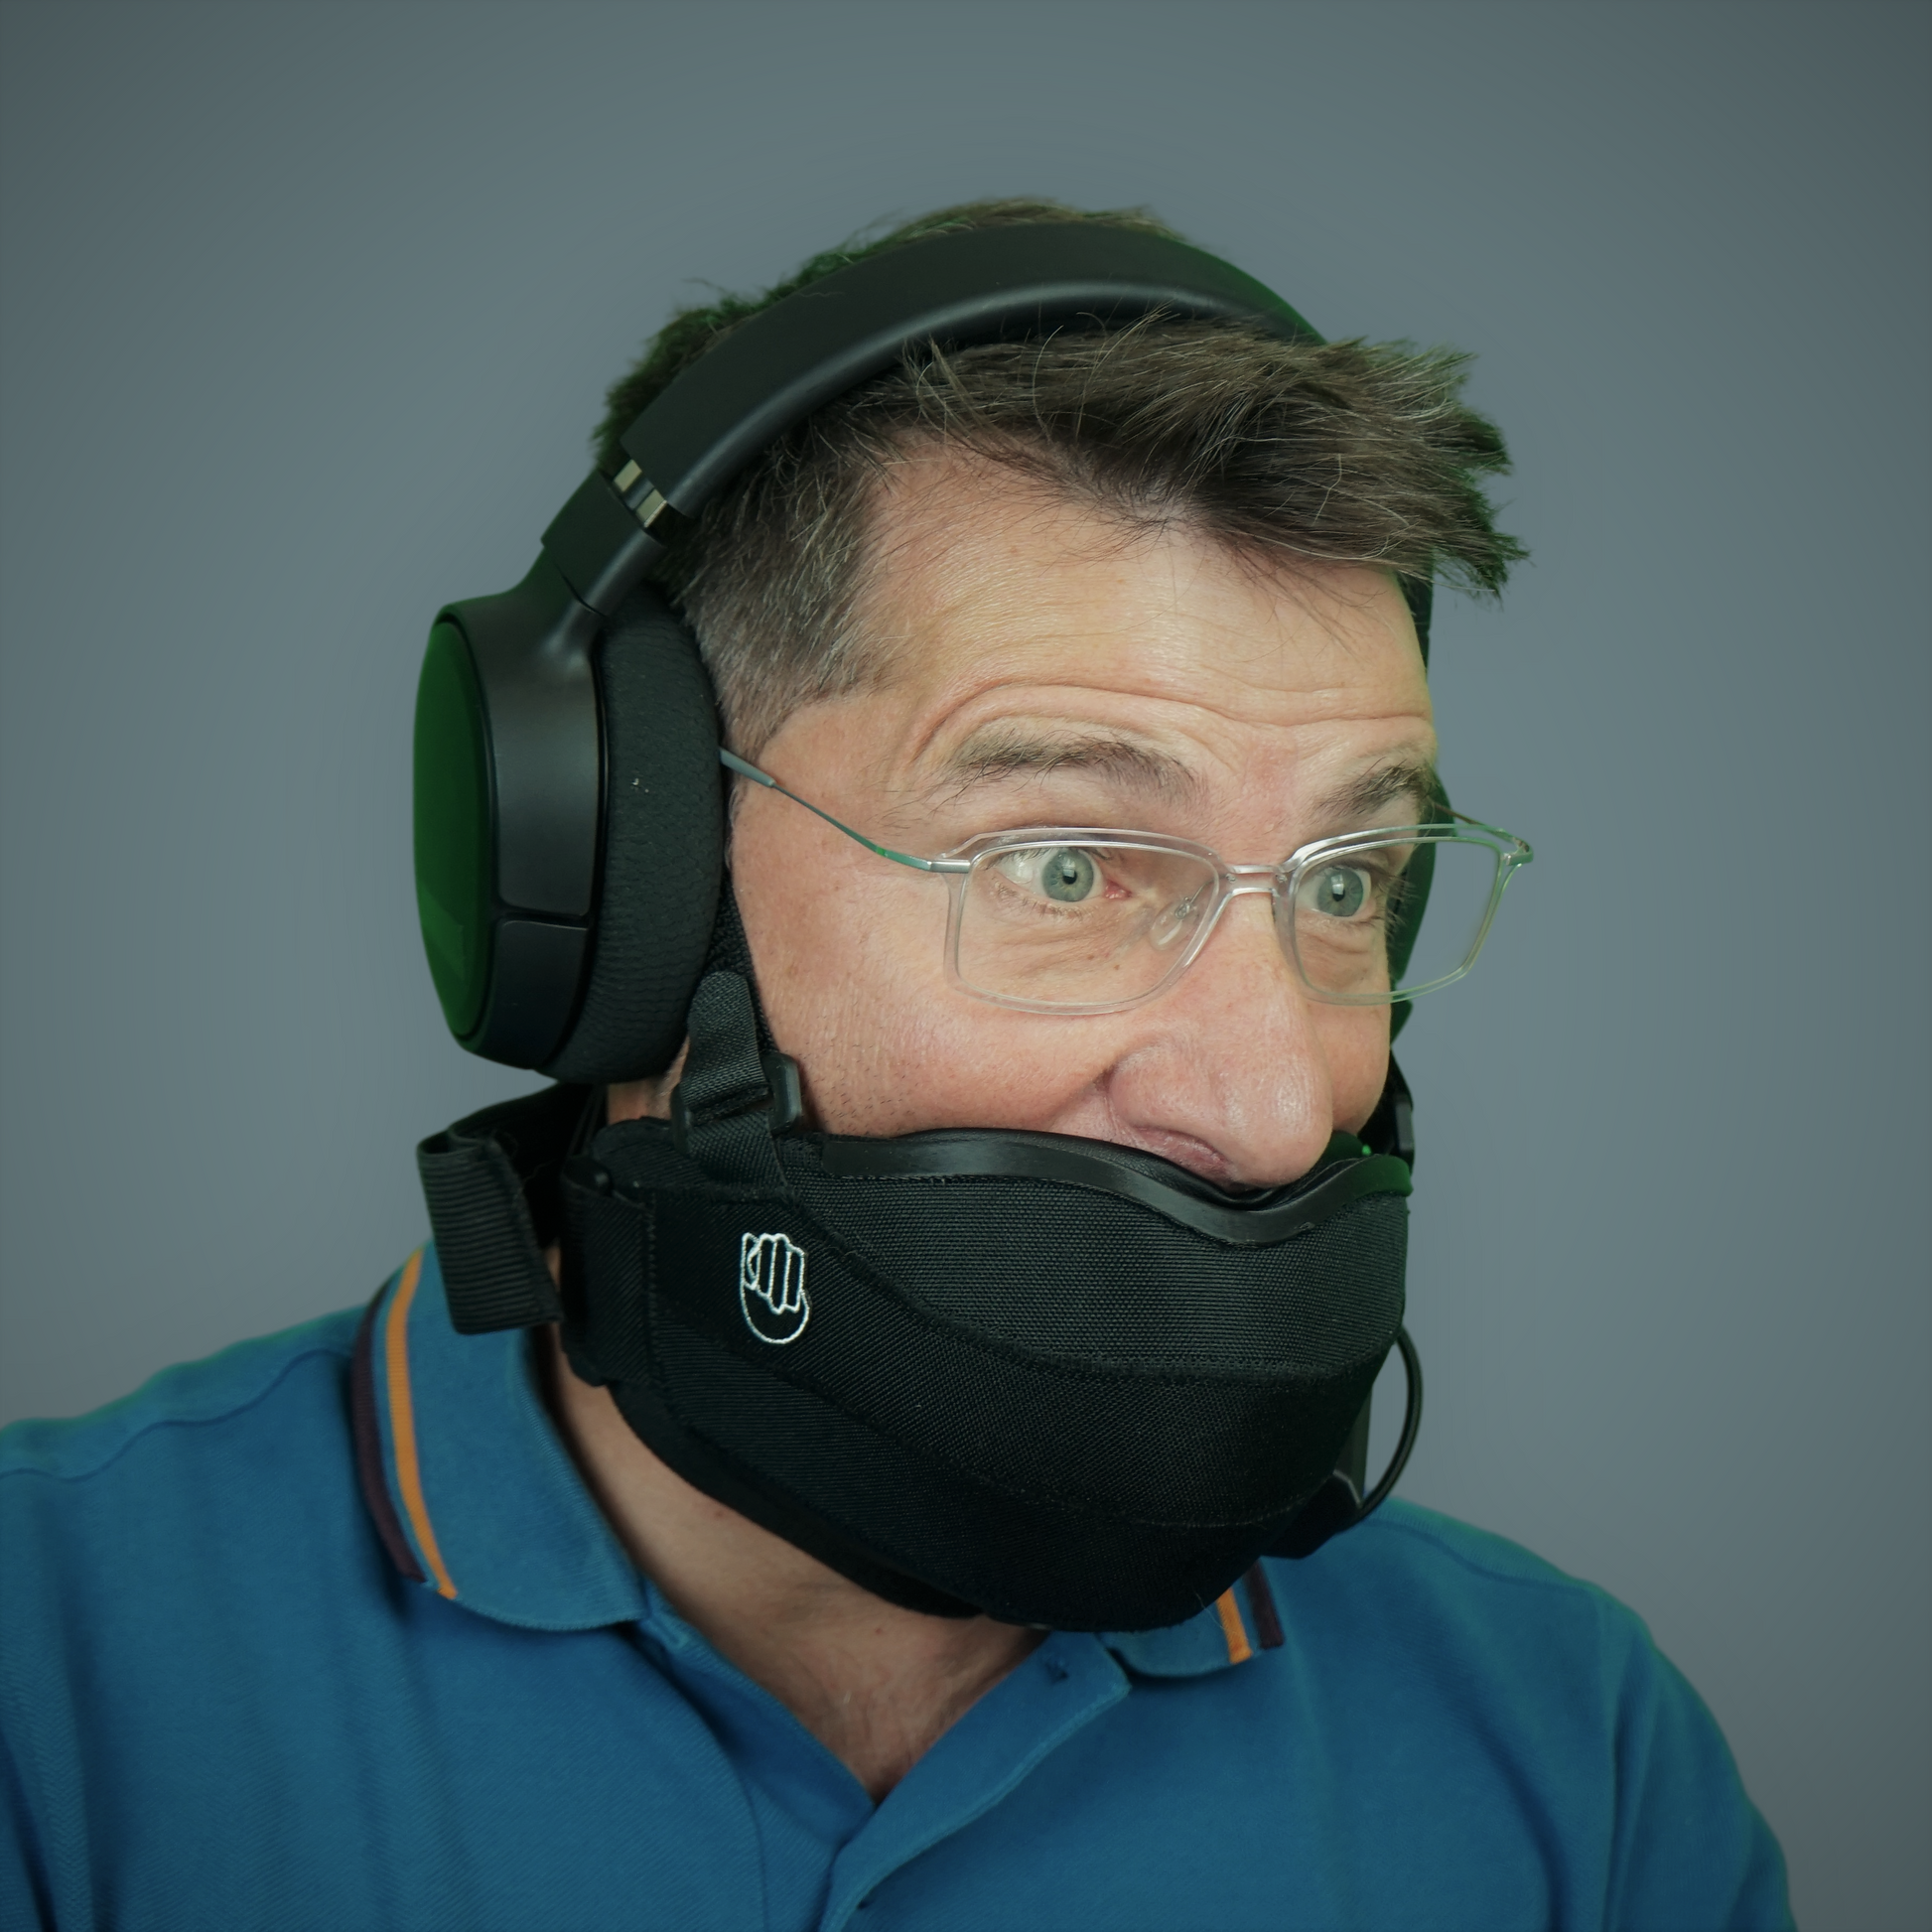 即購入OKphasma mask 防音 マスク metadox 改良版マイク付き